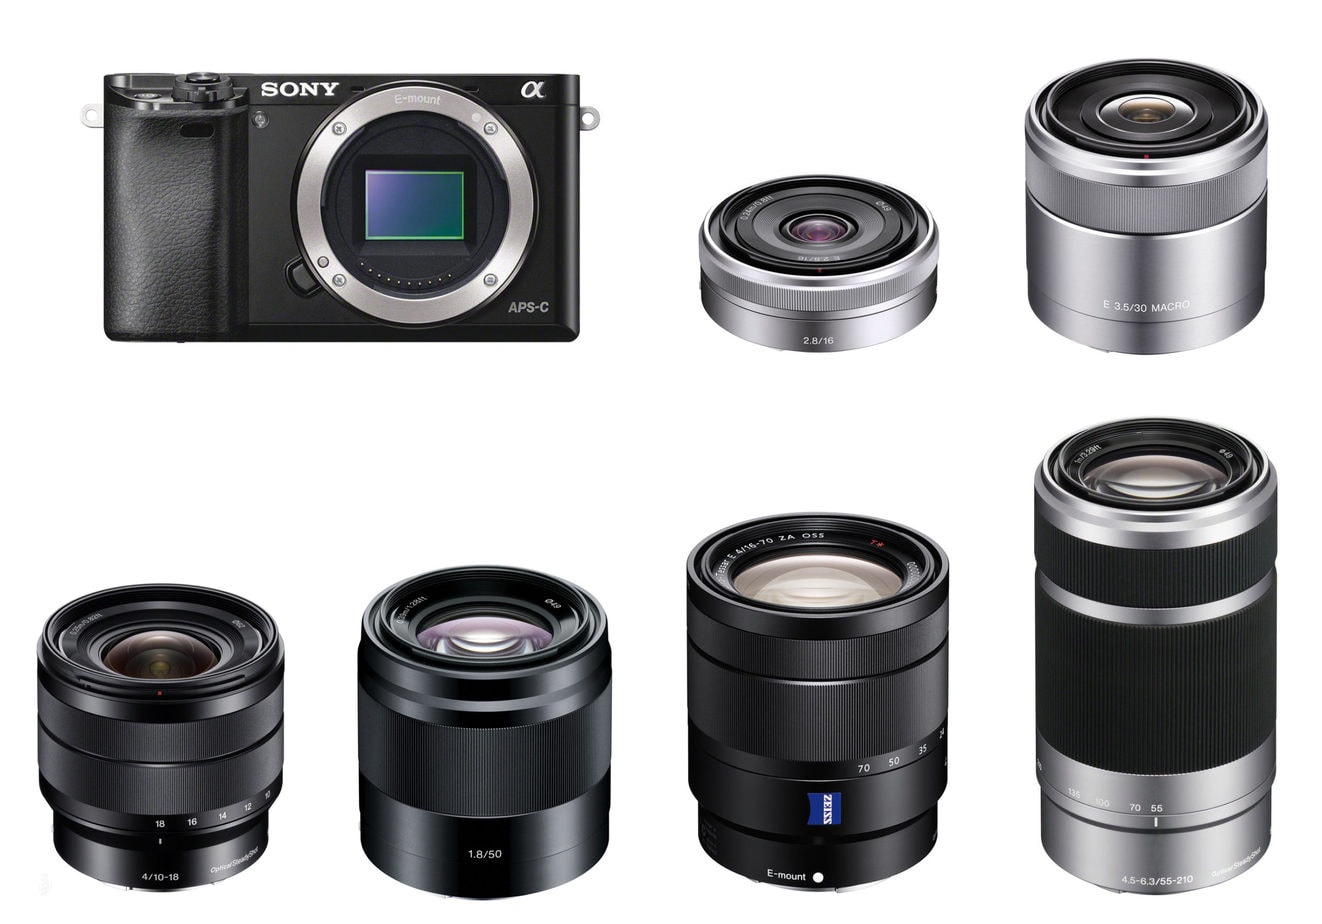 Sony camera and six camera lenses